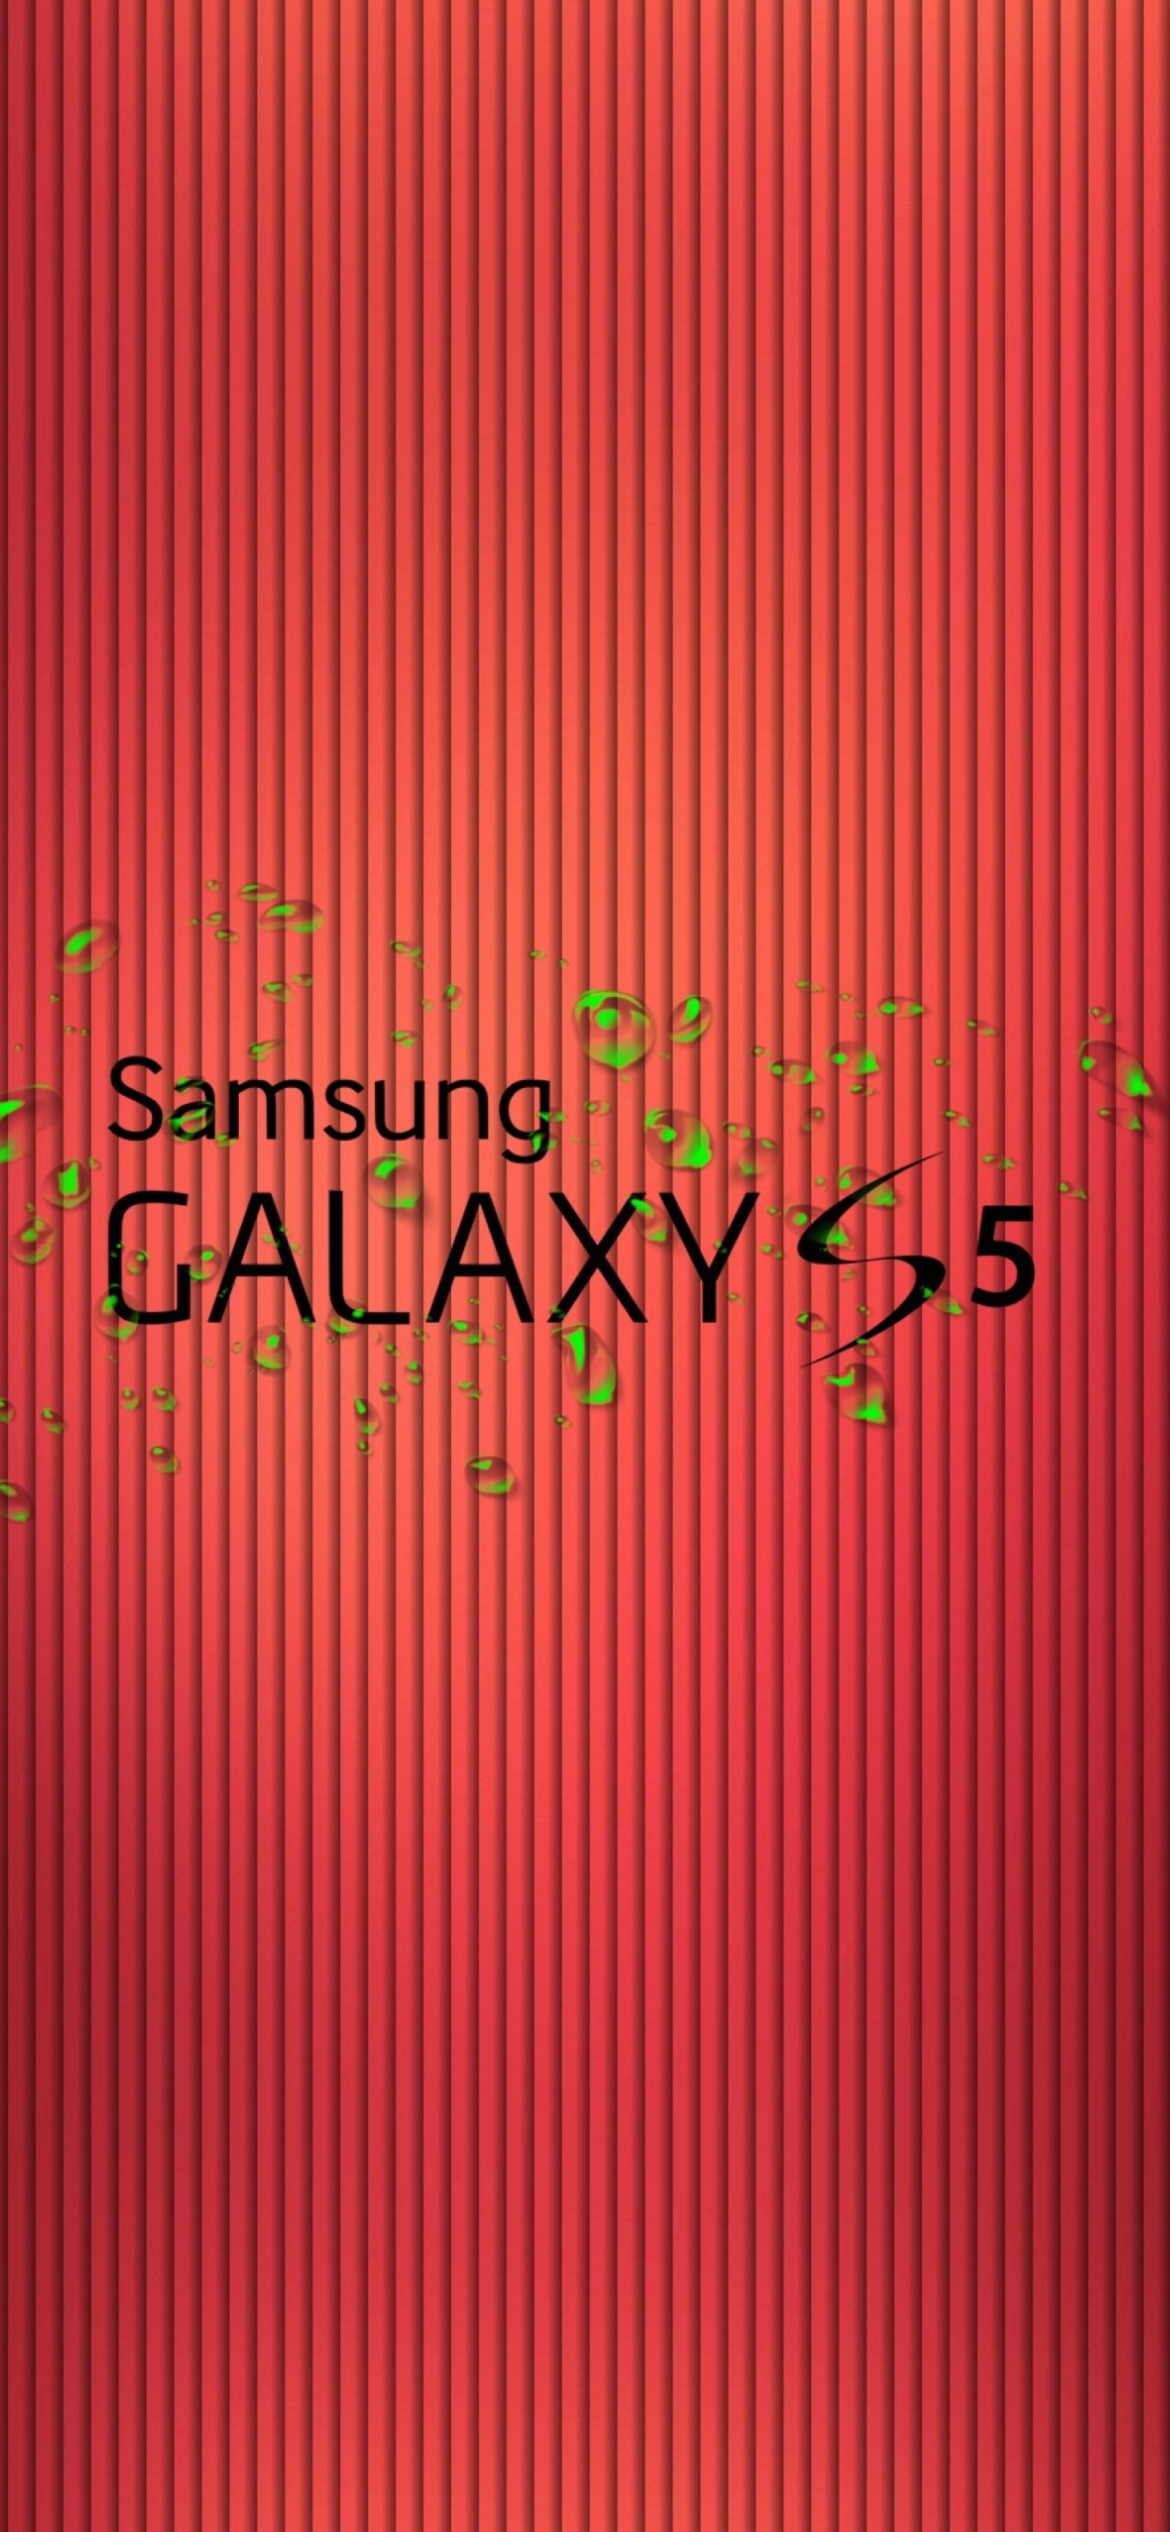 Galaxy S5 wallpaper 1170x2532